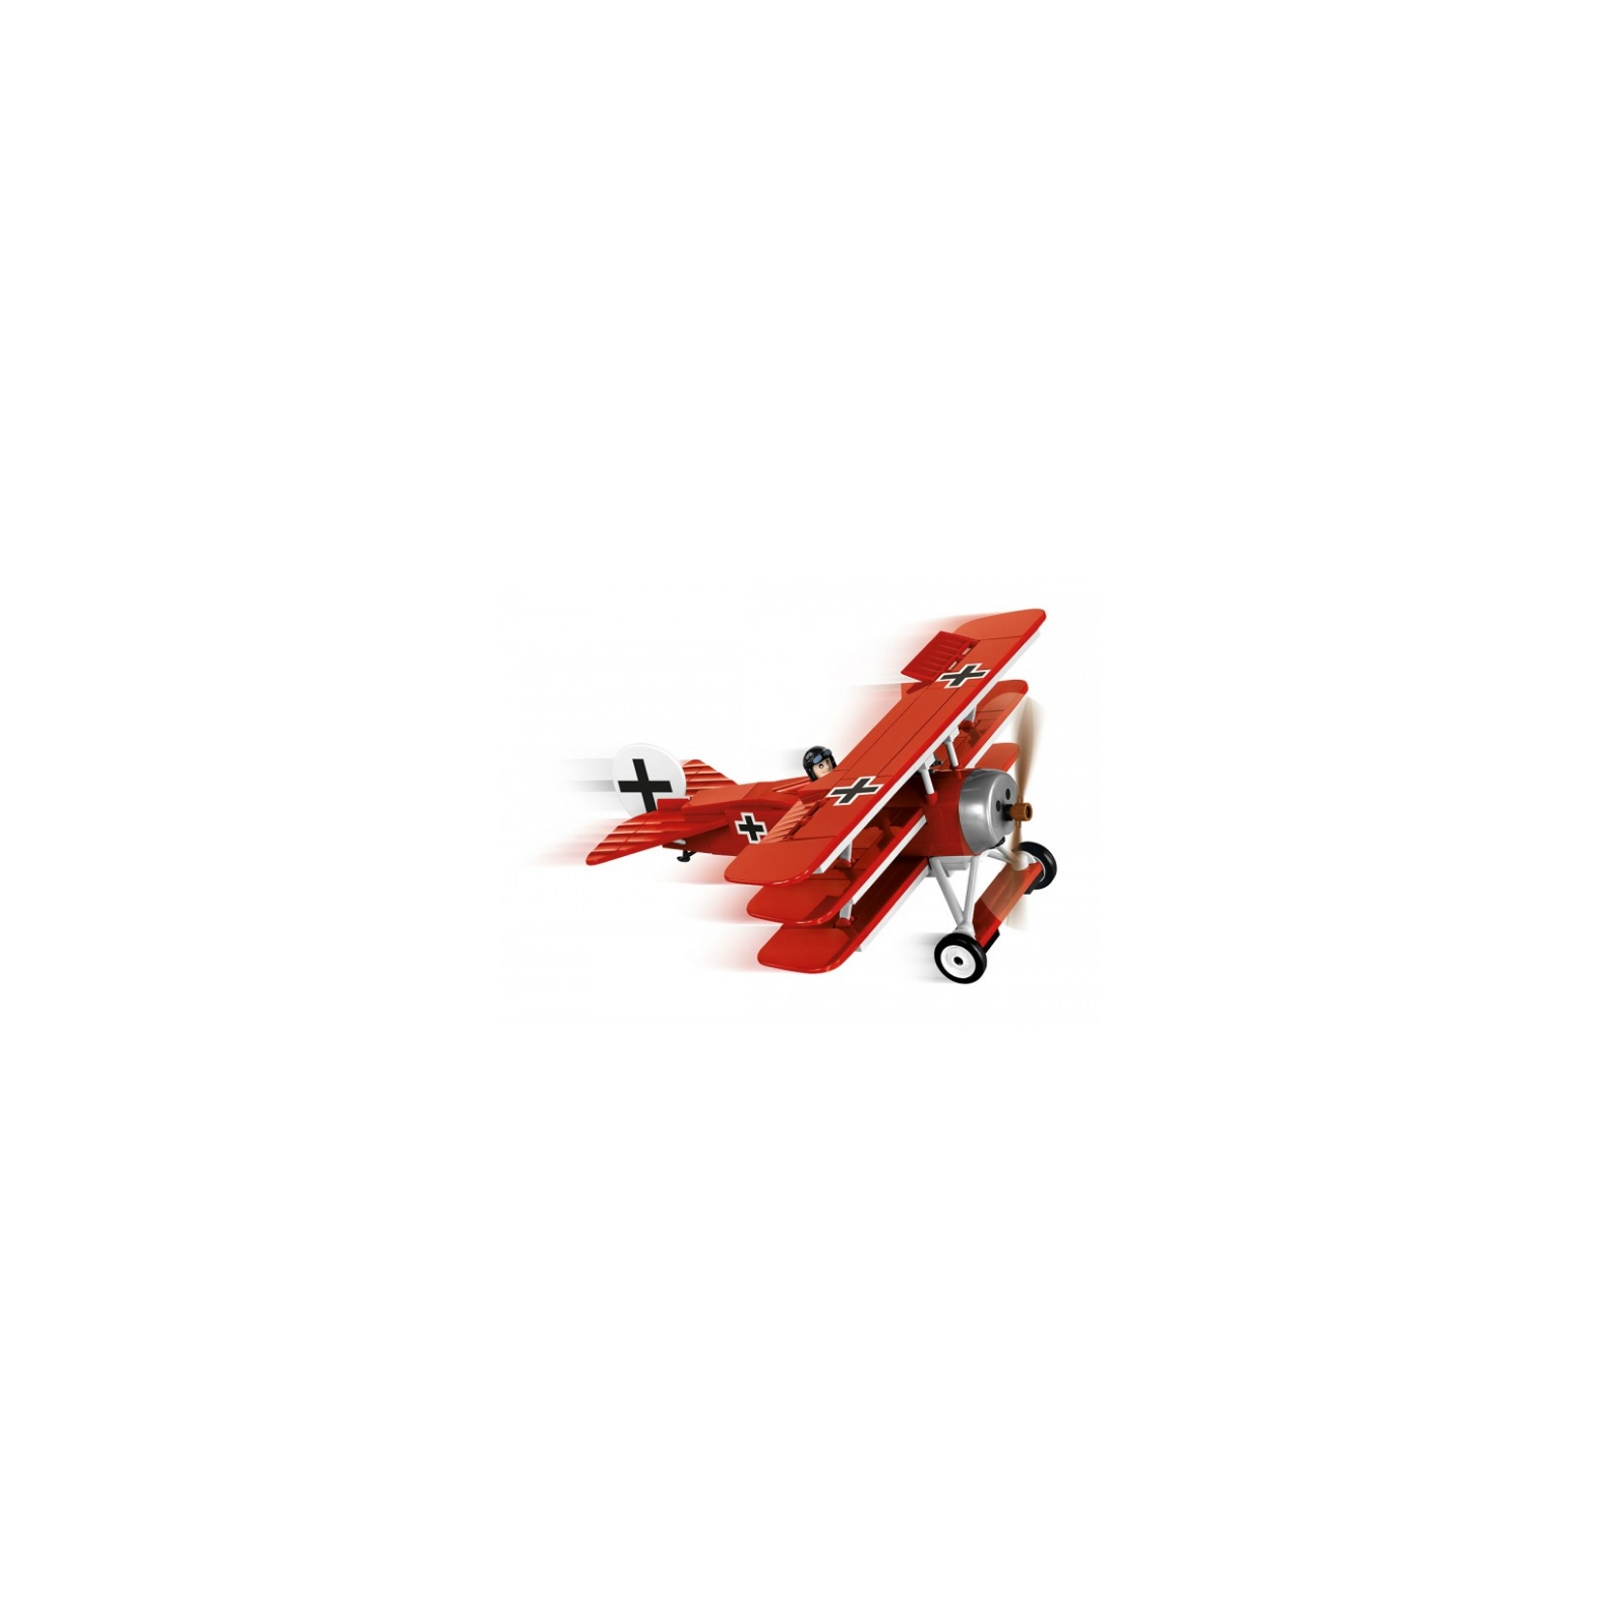 Конструктор Cobi Самолет Fokker Dr. I Красный барон 175 деталей (COBI-2974) изображение 3